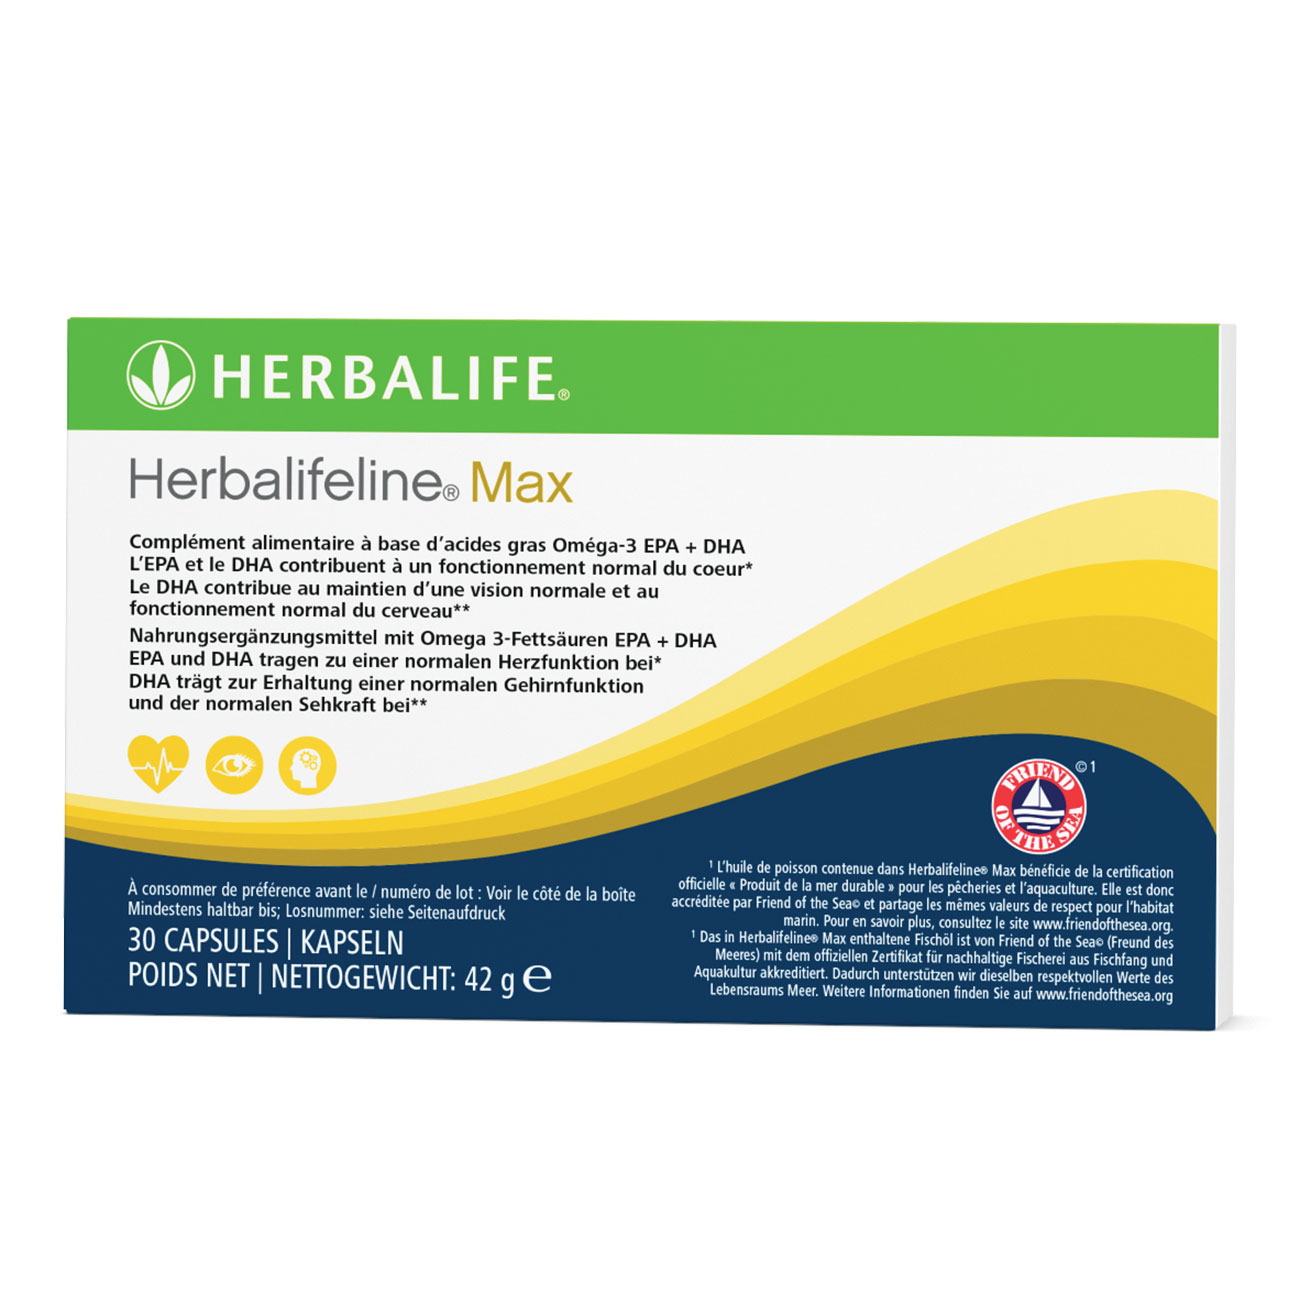 Herbalifeline® Max capsules –  complément alimentaire, riche en acides gras essentiels oméga-3, issus d'une pêche durable.